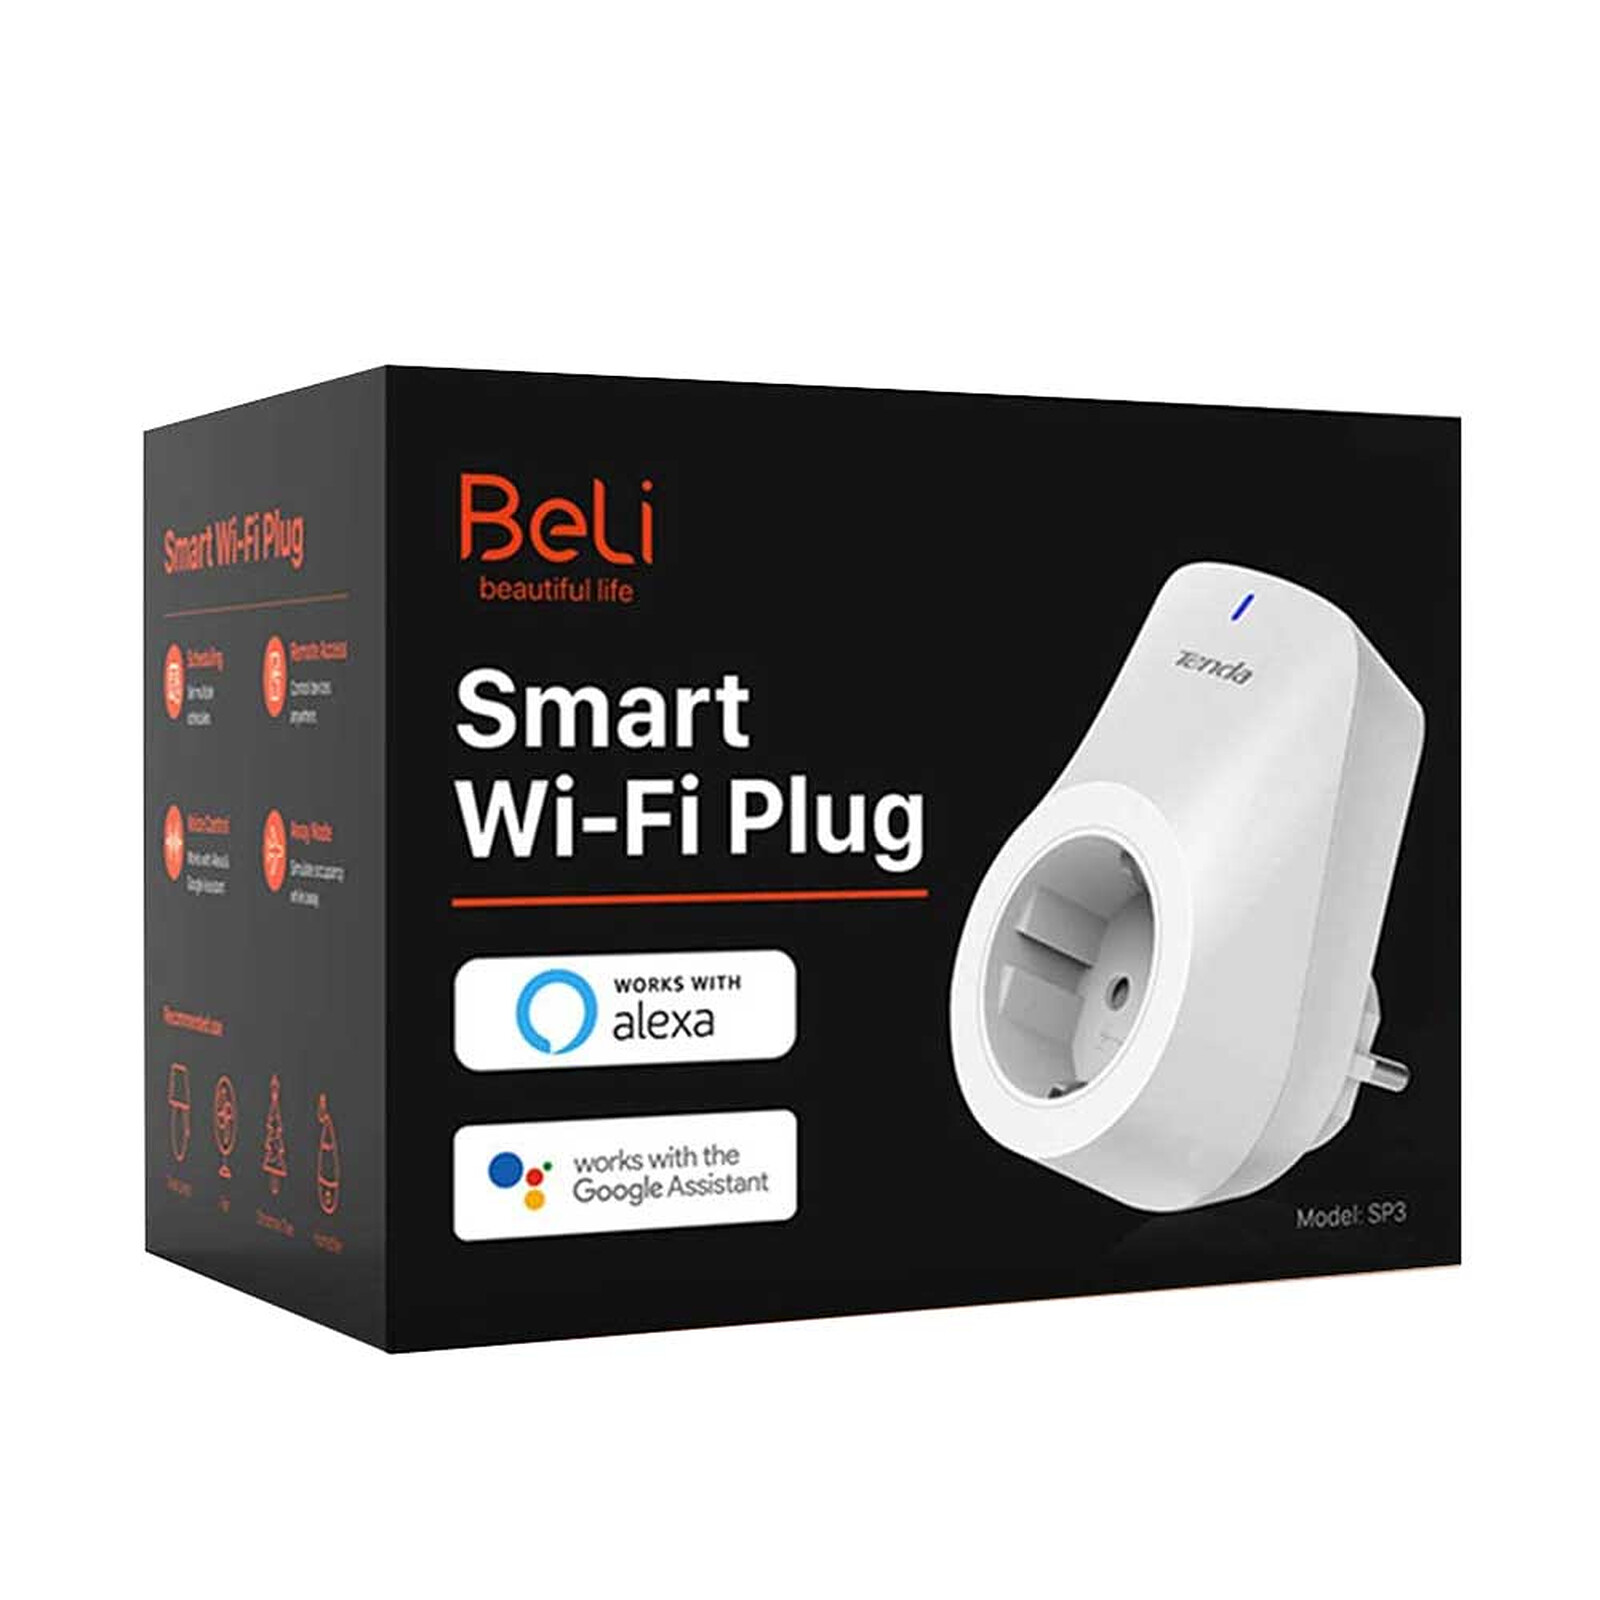 WiZ, prise connectée Wi-Fi avec mesure consommation, fonctionne avec Alexa,  Google Assistant et Apple HomeKit